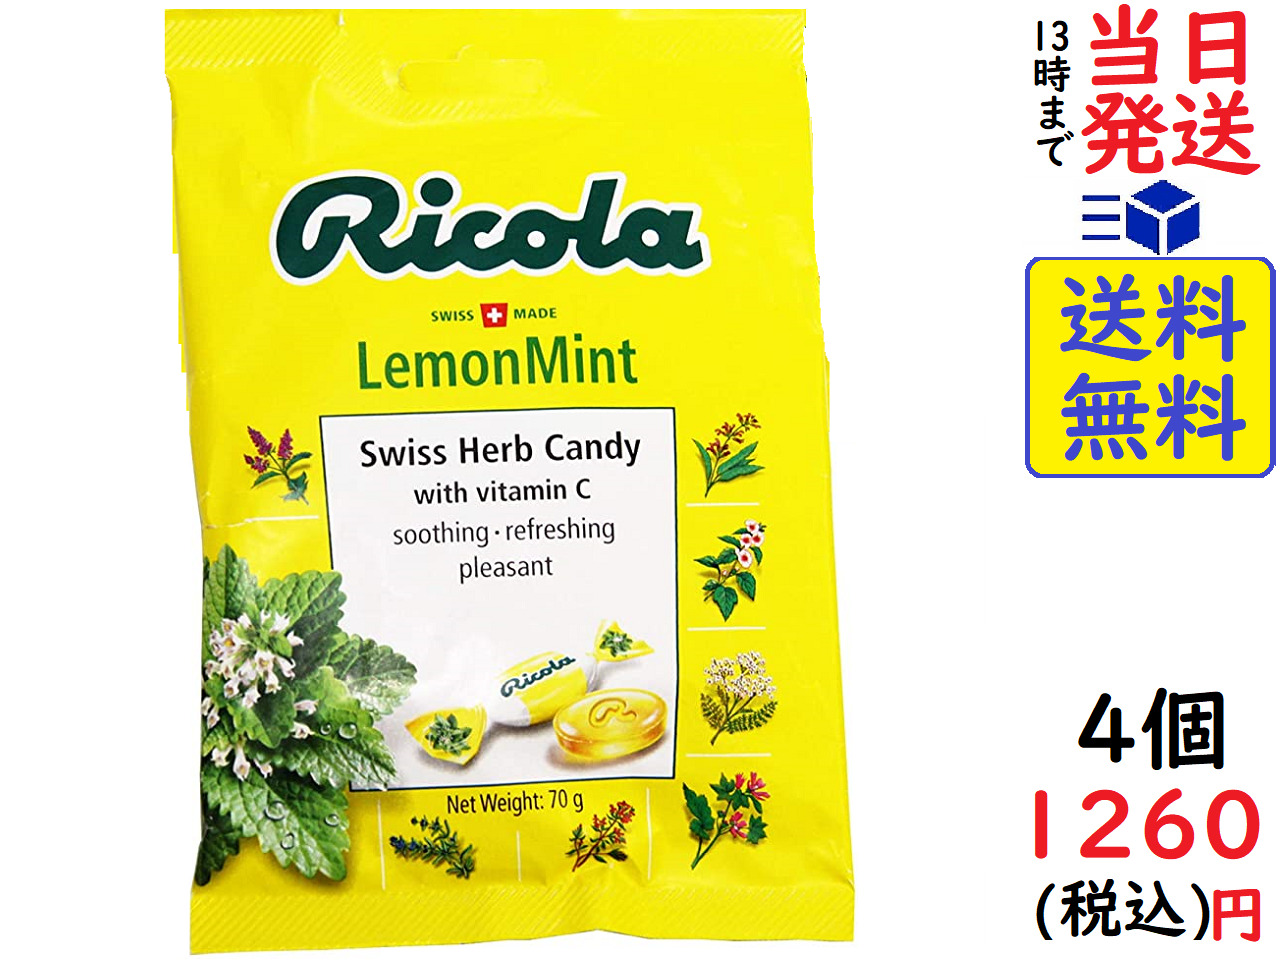 三菱食品 リコラ レモンミント ハーブキャンディー 70g ×4個 賞味期限2024 03 09 あめ・キャンディ 